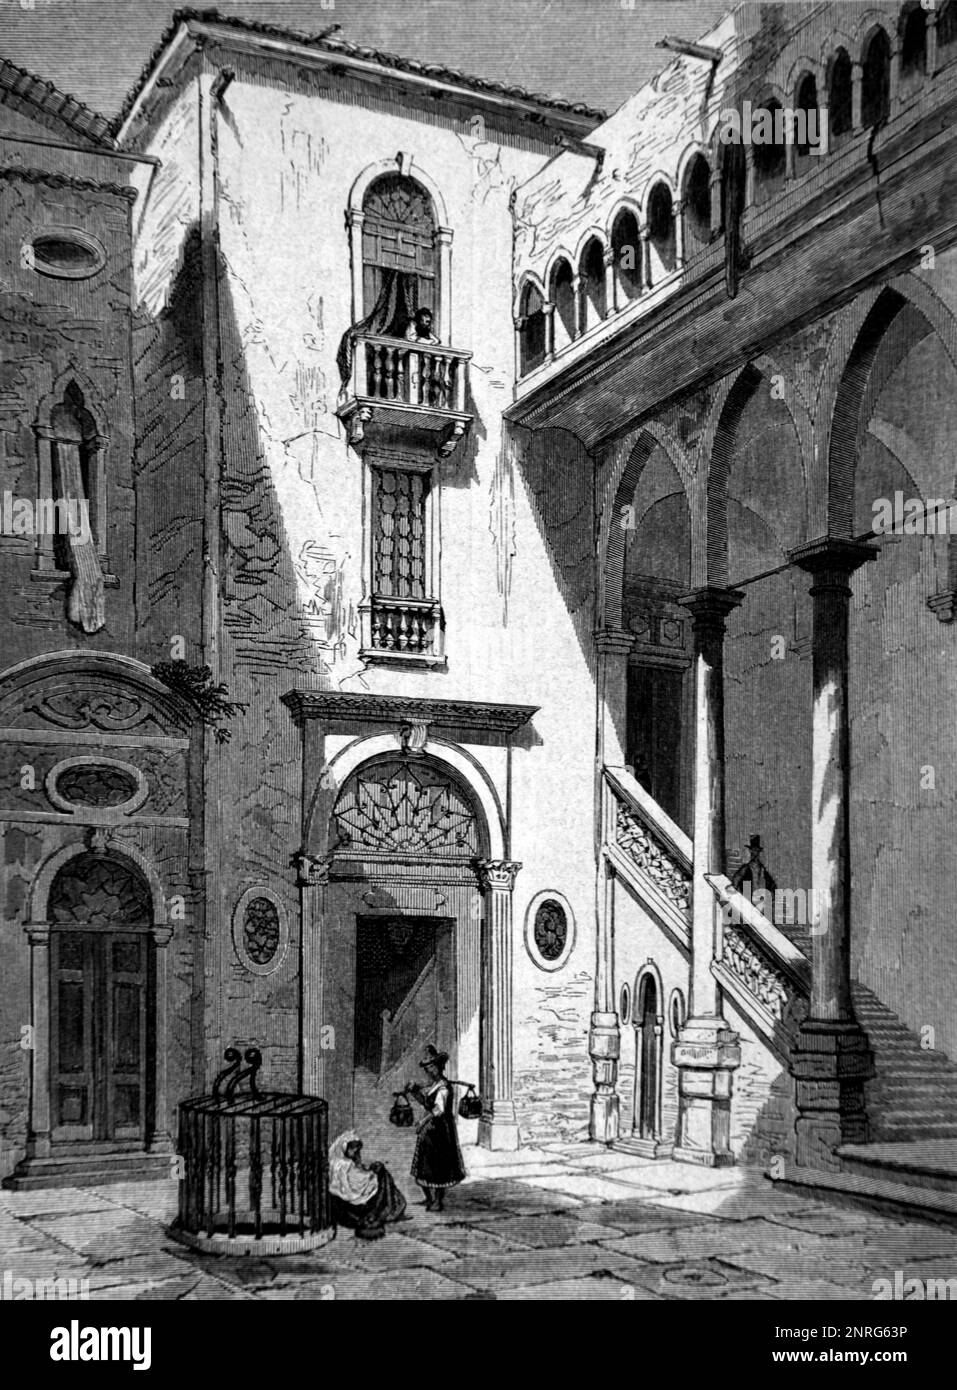 Cour du Palais da Mula, Palazzo da Mula Morosini, Venise, Italie. . Gravure ancienne ou illustration 1862 Banque D'Images